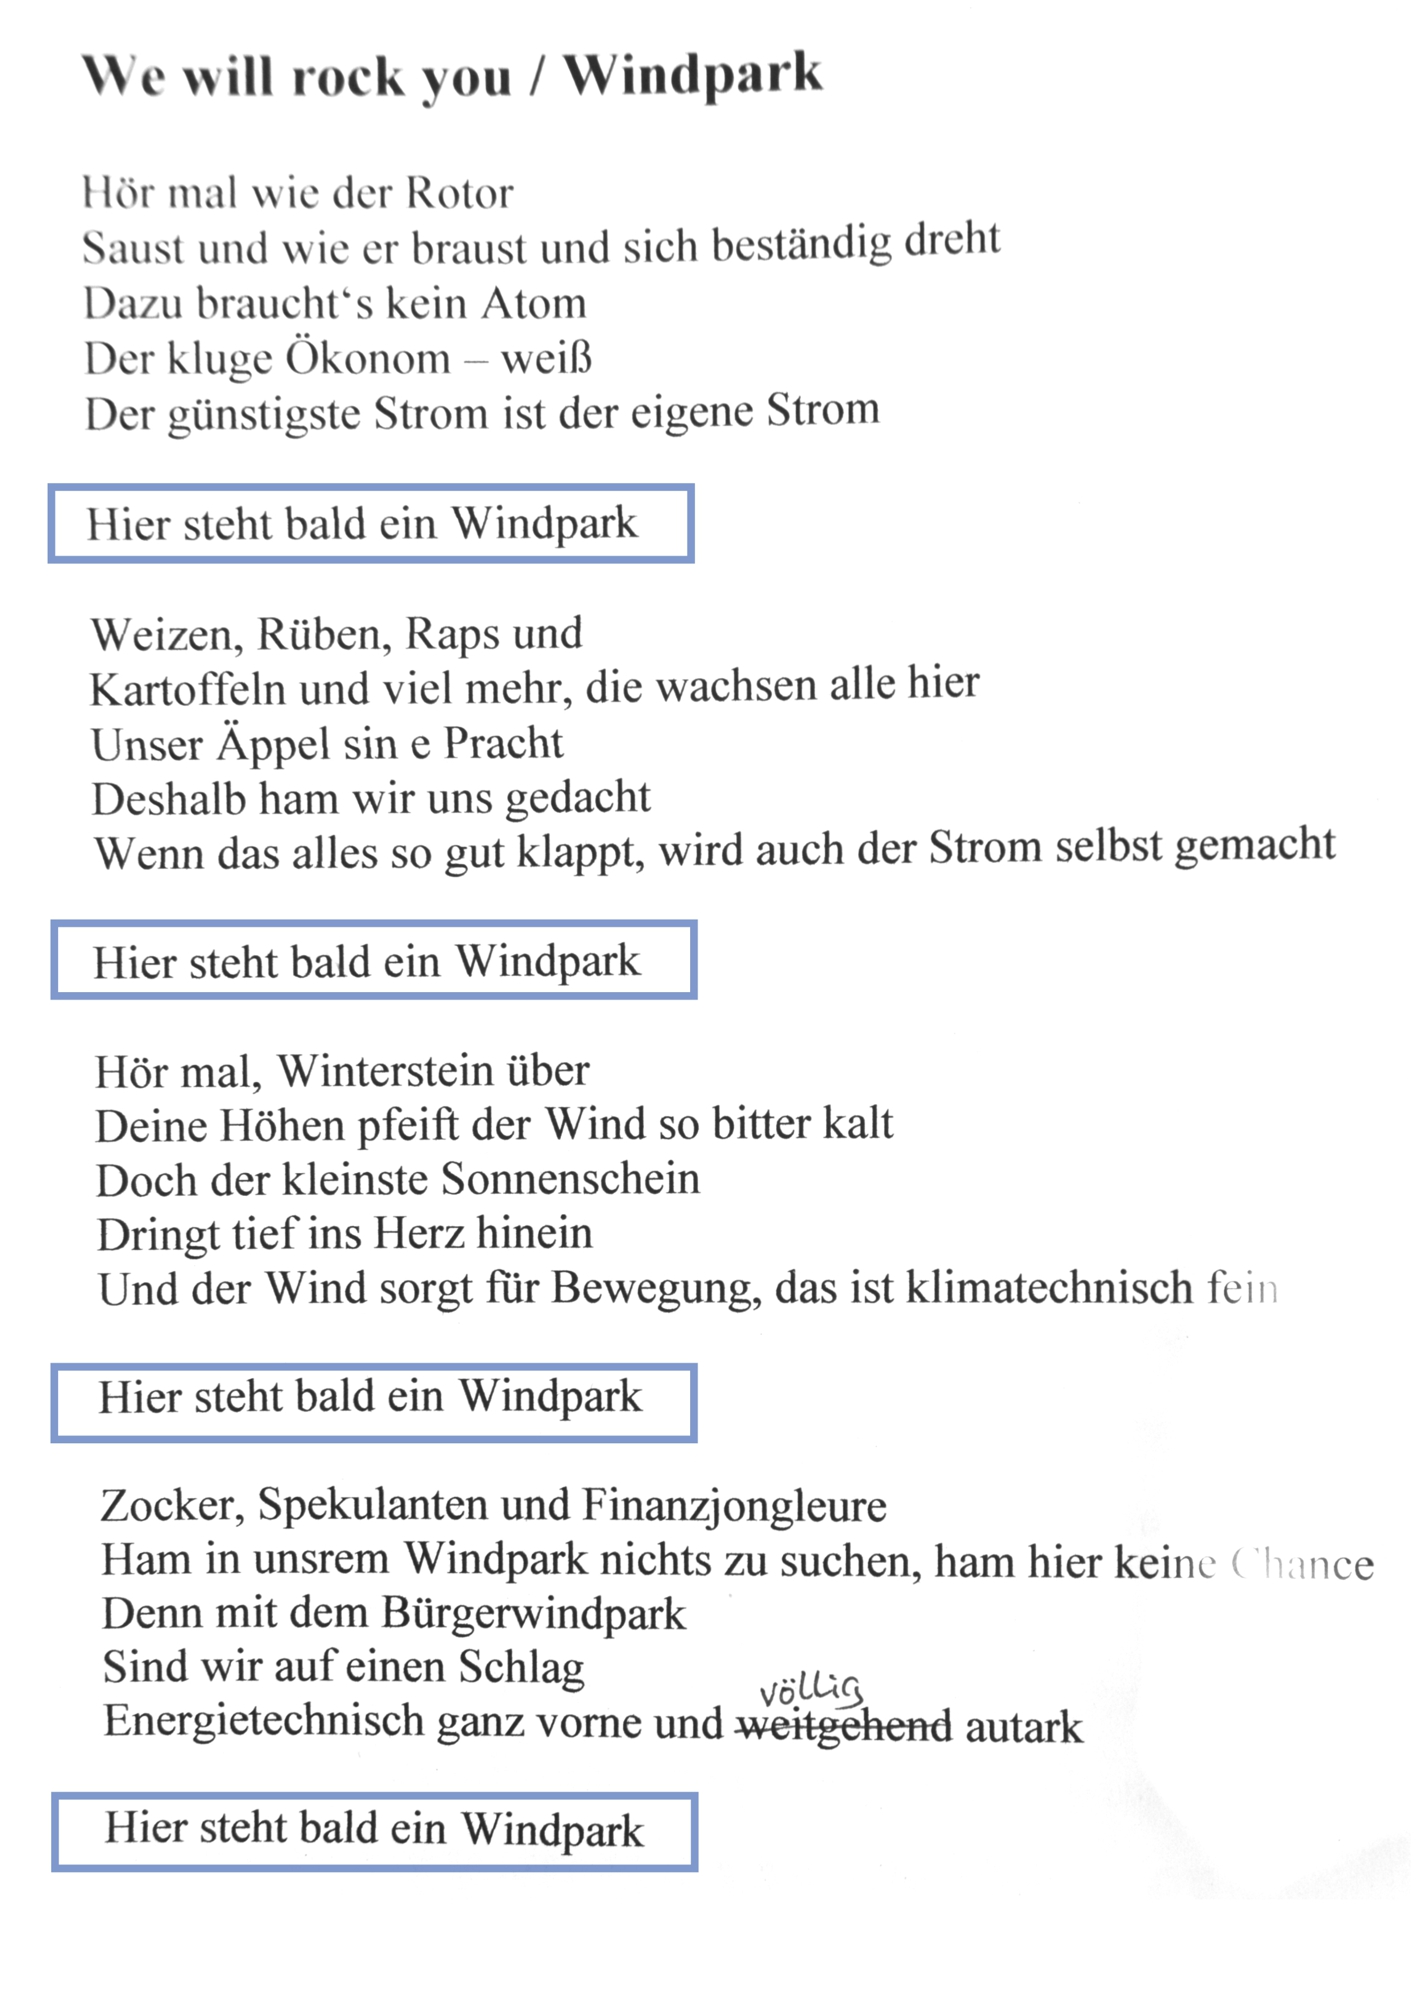 Hier noch eine illegale Raubkopie der neuen Windparkhymne 'Hier steht bald ein Windpark', von Jürgen Wagner. Singen ist erlaubt, Vervielfältigung jeglicher Art dagegen strengstens untersagt.